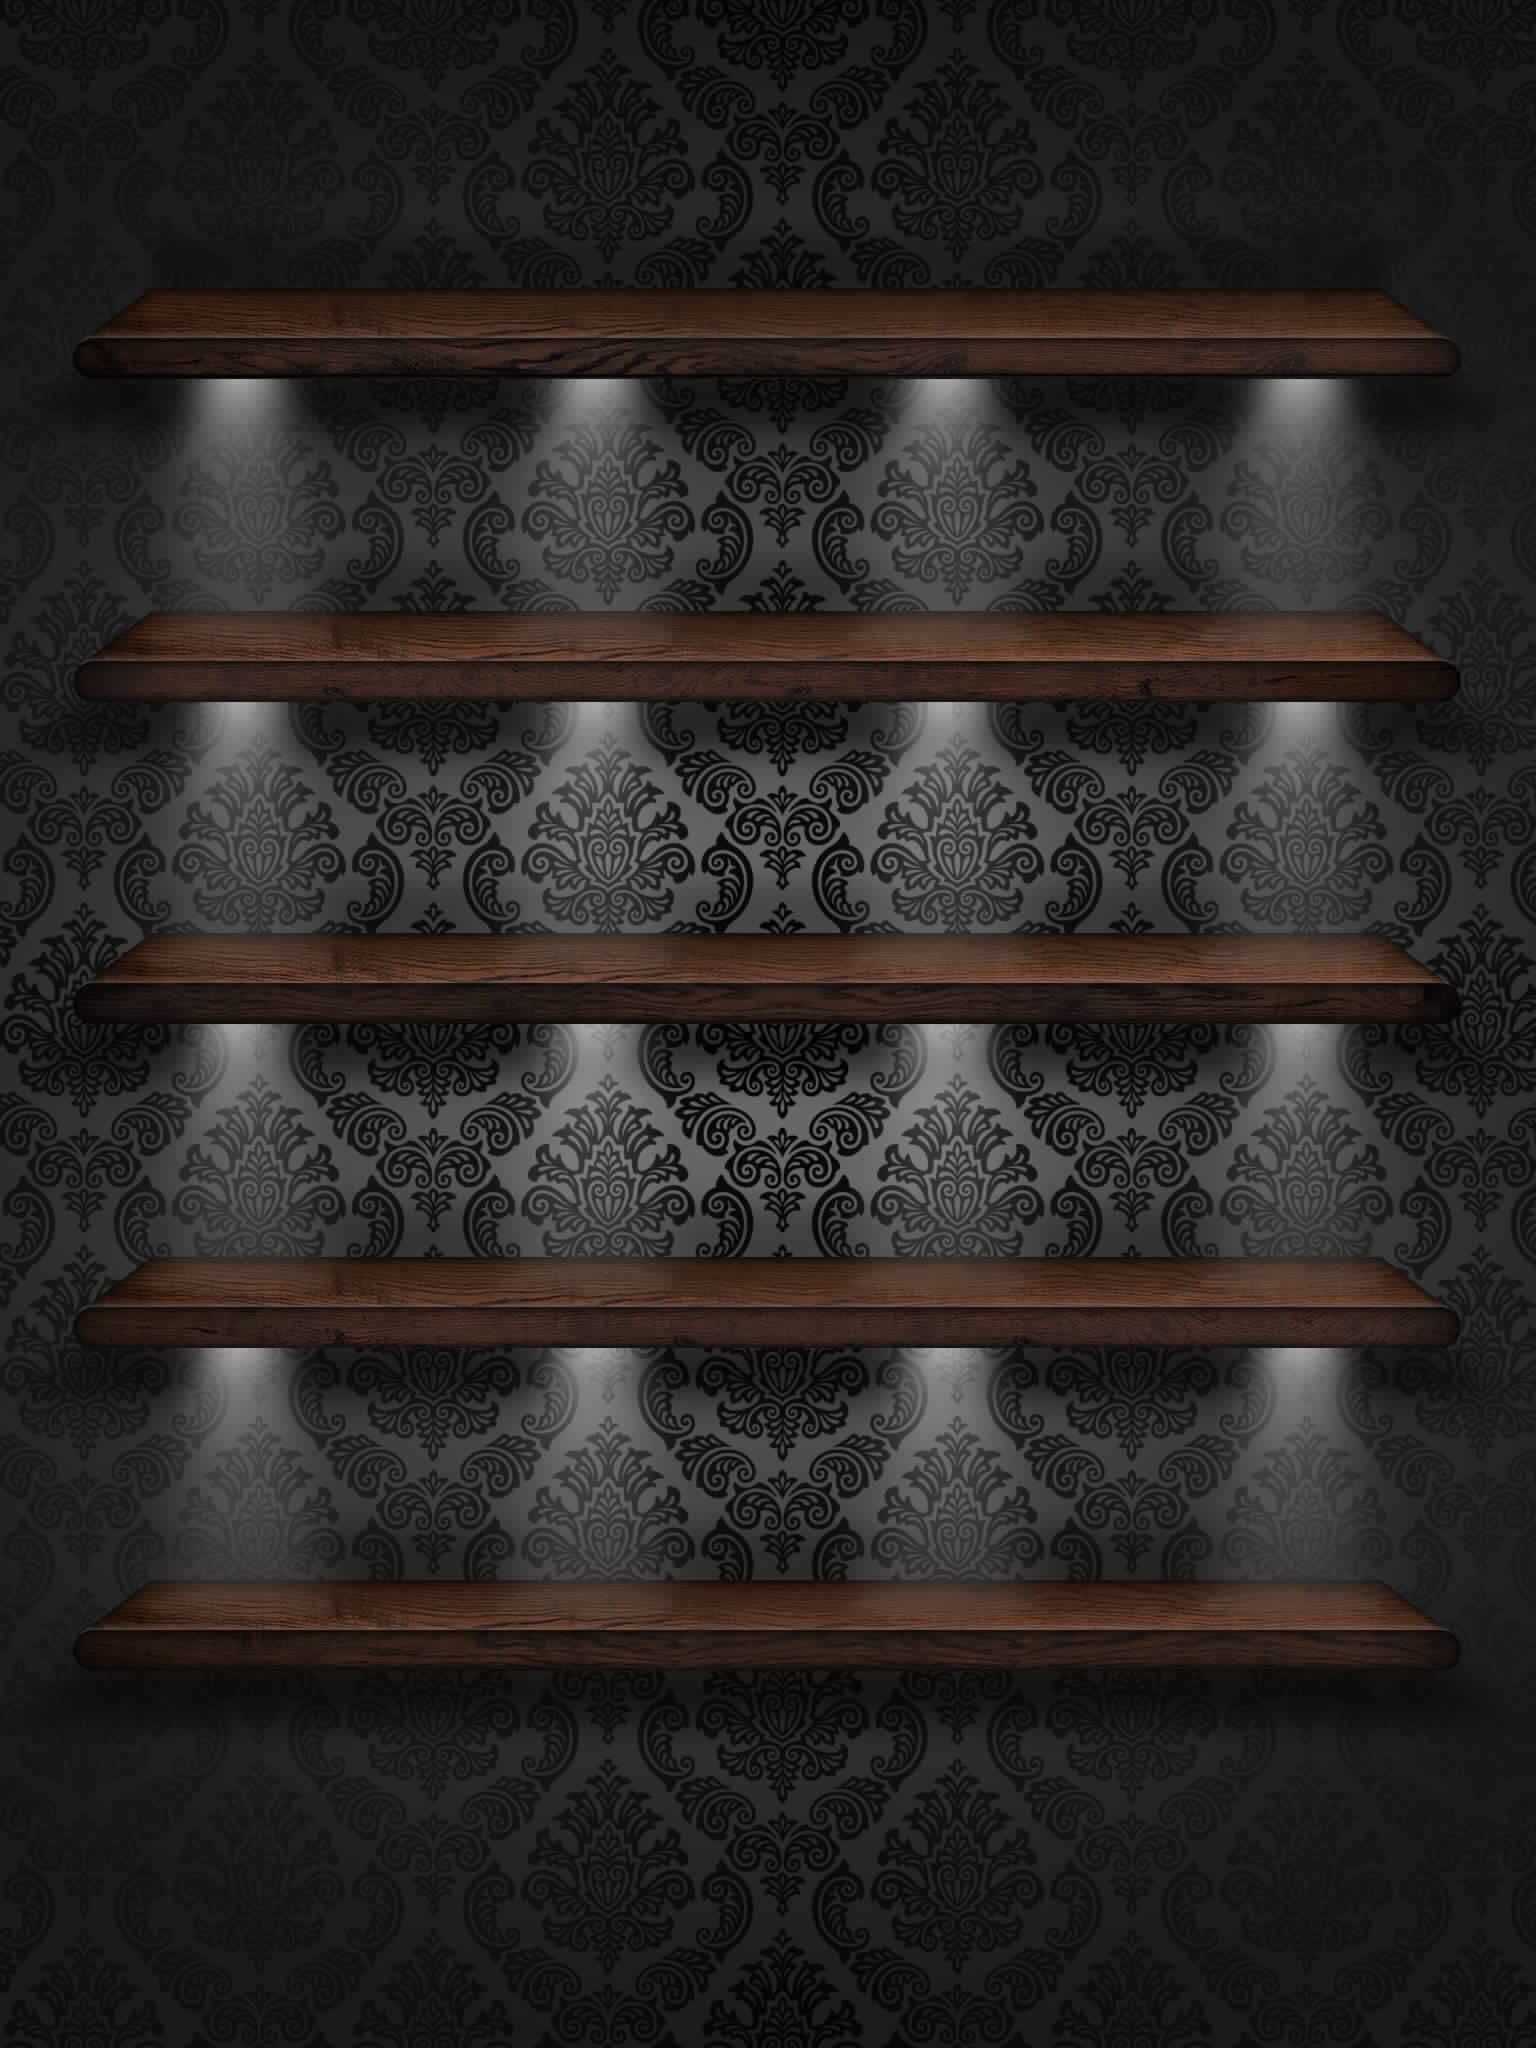 Aesthetic Black Wallpaper With Shelves